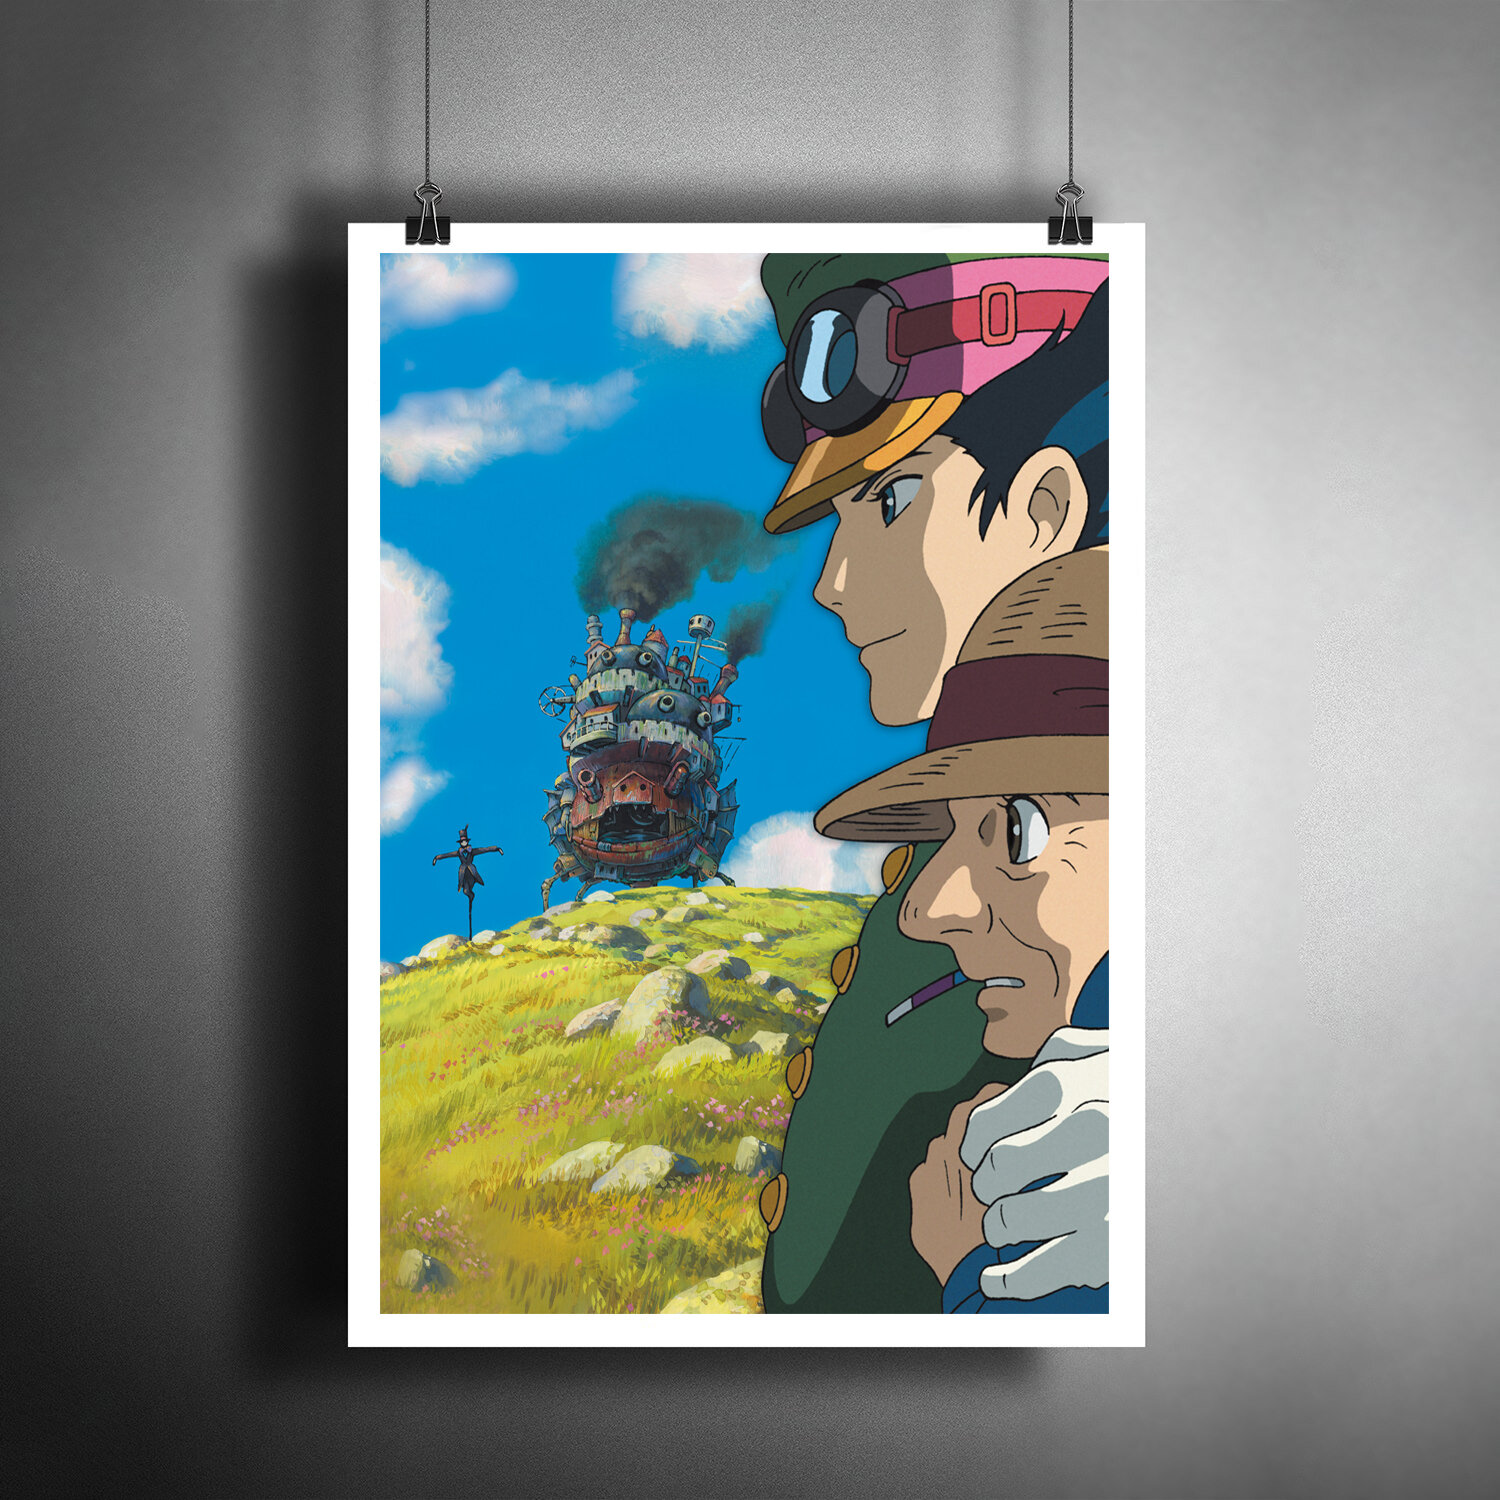 Постер плакат для интерьера Аниме. Миядзаки - HOWLS MOVING CASTLE. Ходячий замок/ Декор дома офиса бара. A3 (297 x 420 мм)